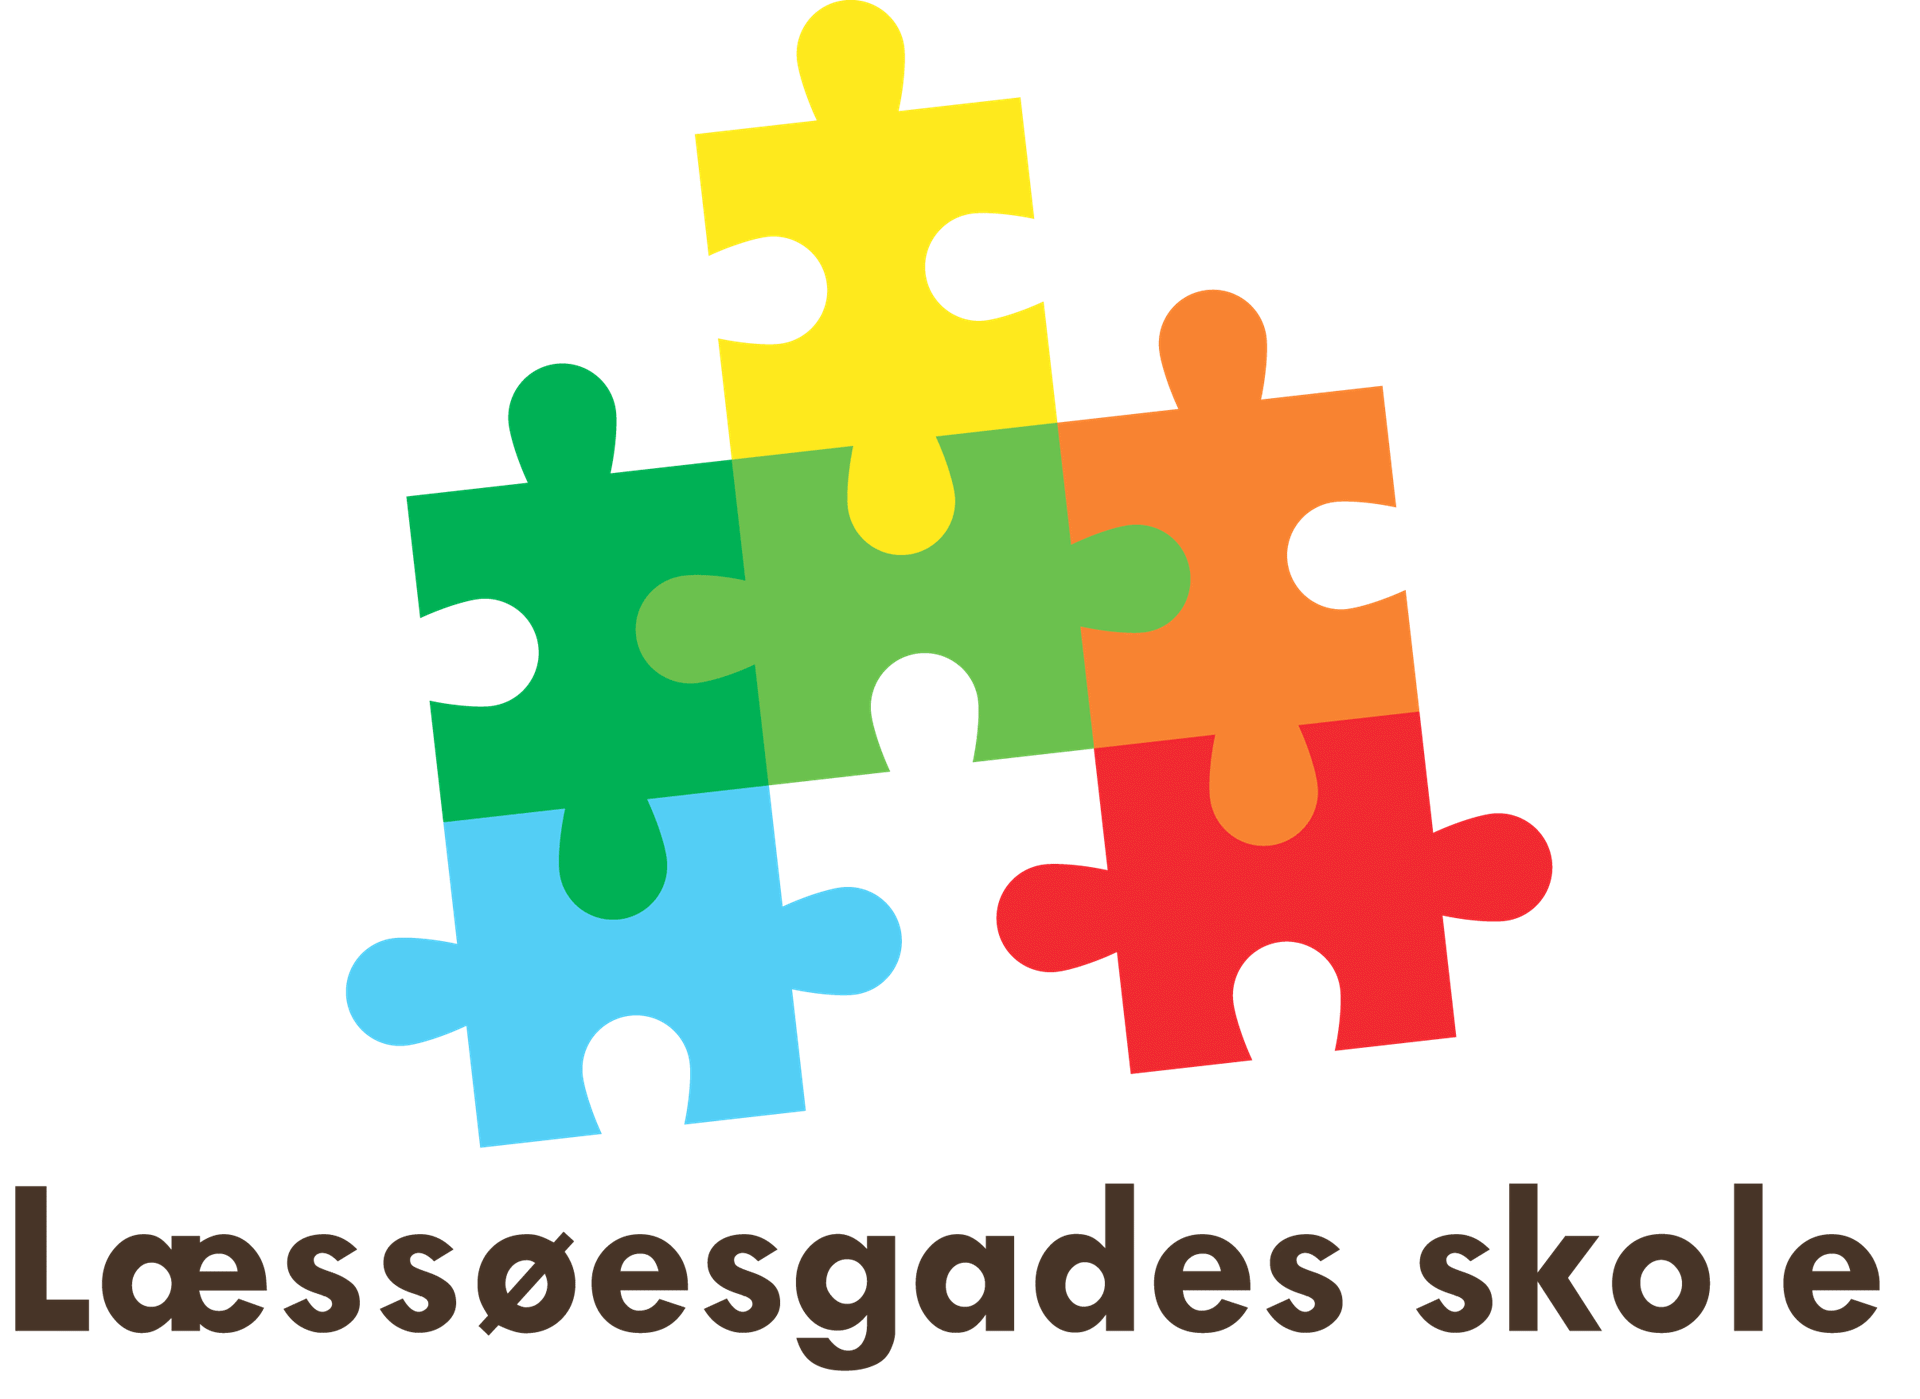 Læssøesgades Skole logo